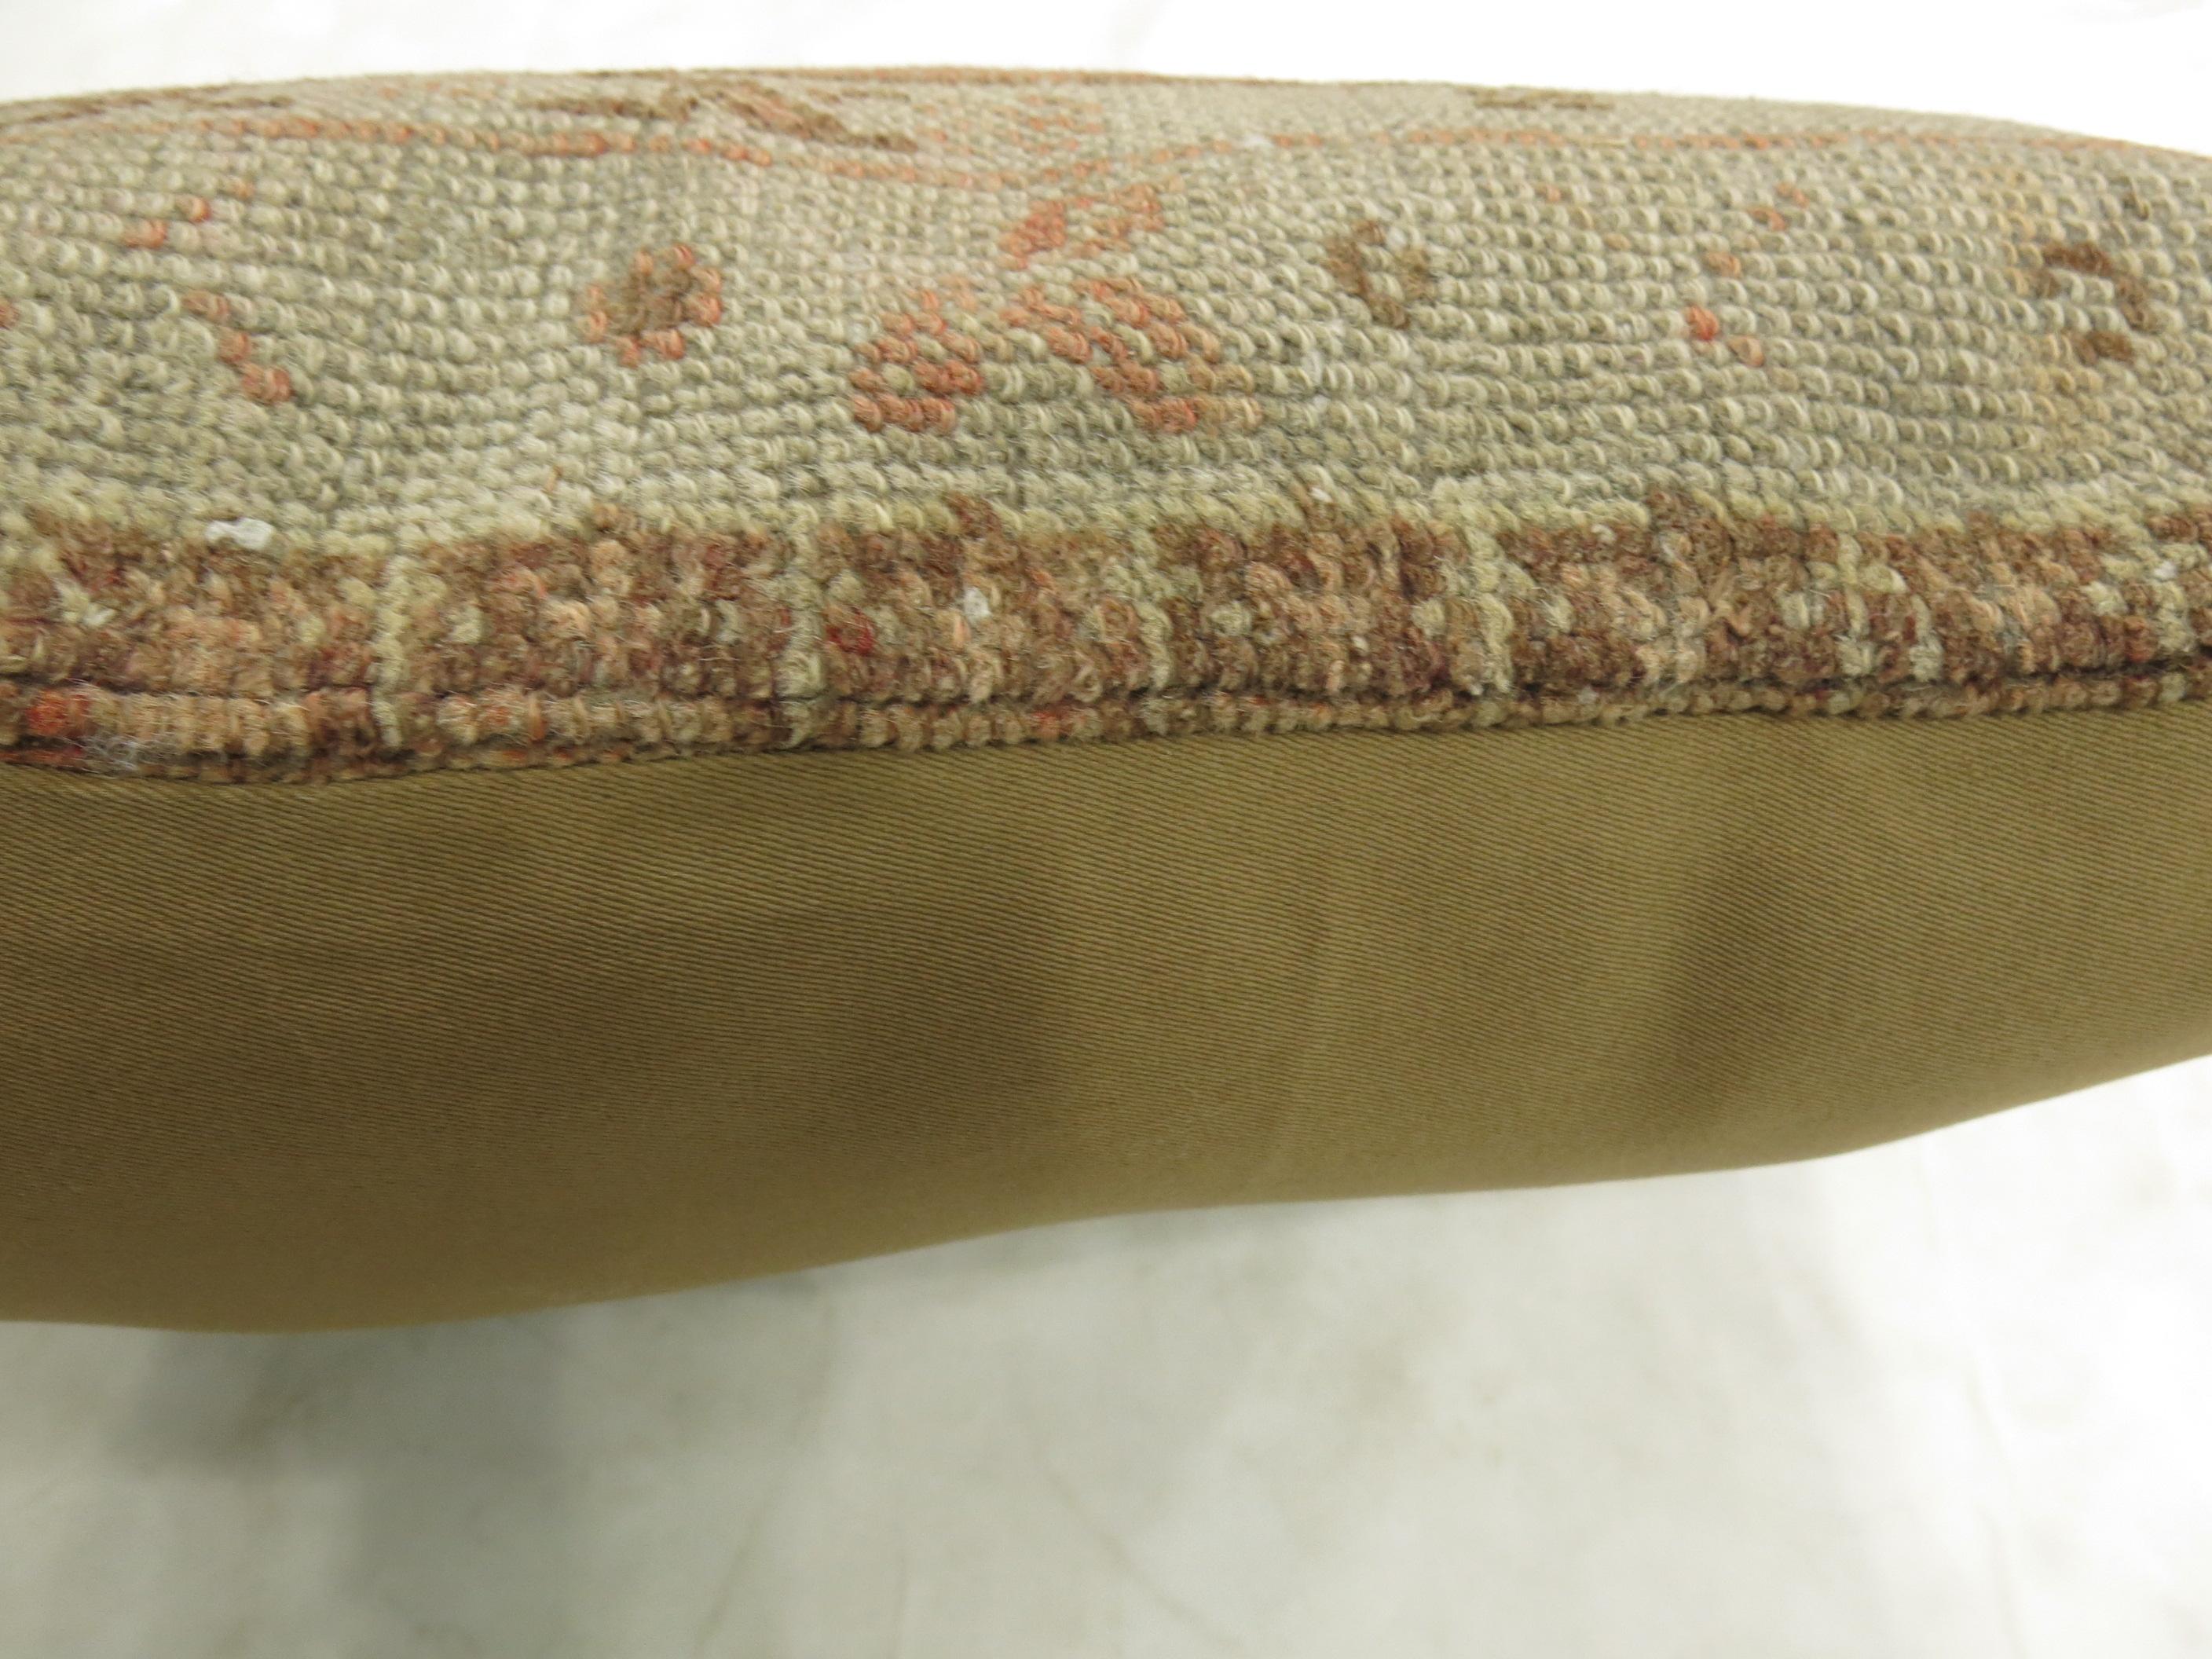 Grand coussin réalisé à partir d'un tapis turc Oushak du 20e siècle dans un ton peau d'orange.

Mesures : 16'' x 24''.